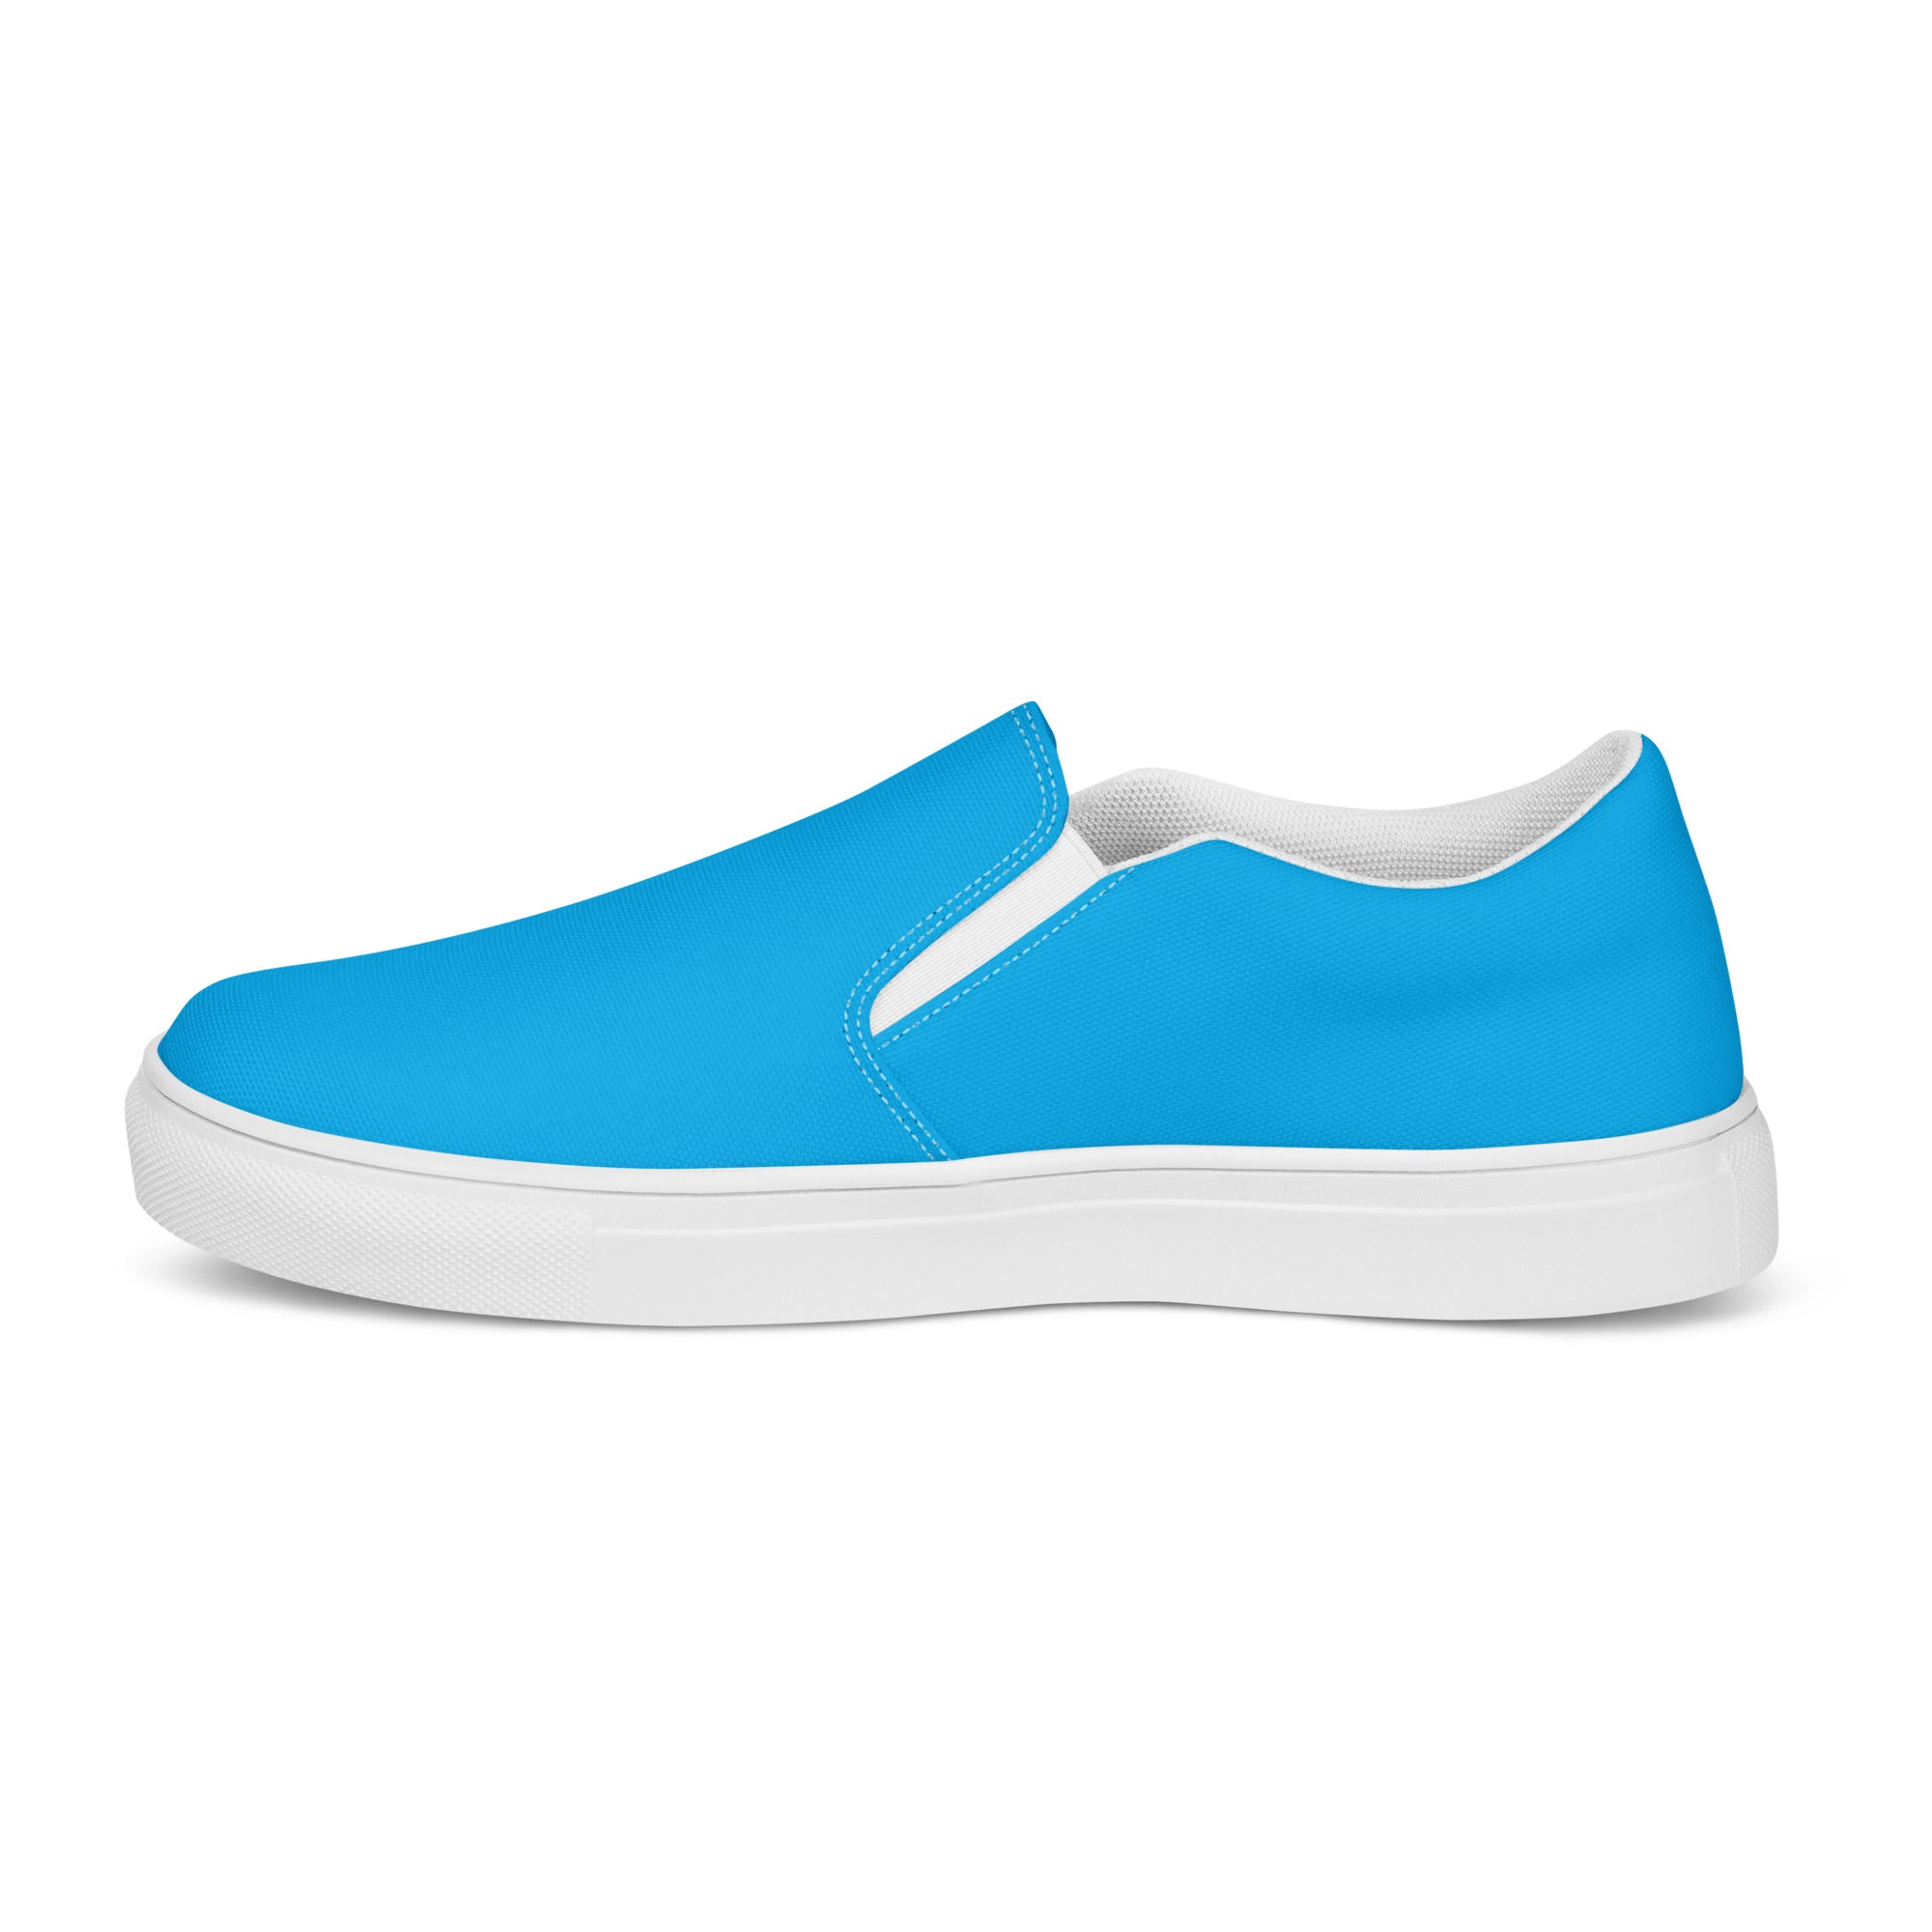 Rad Palm Blue Men’s Slip-On Canvas Shoes